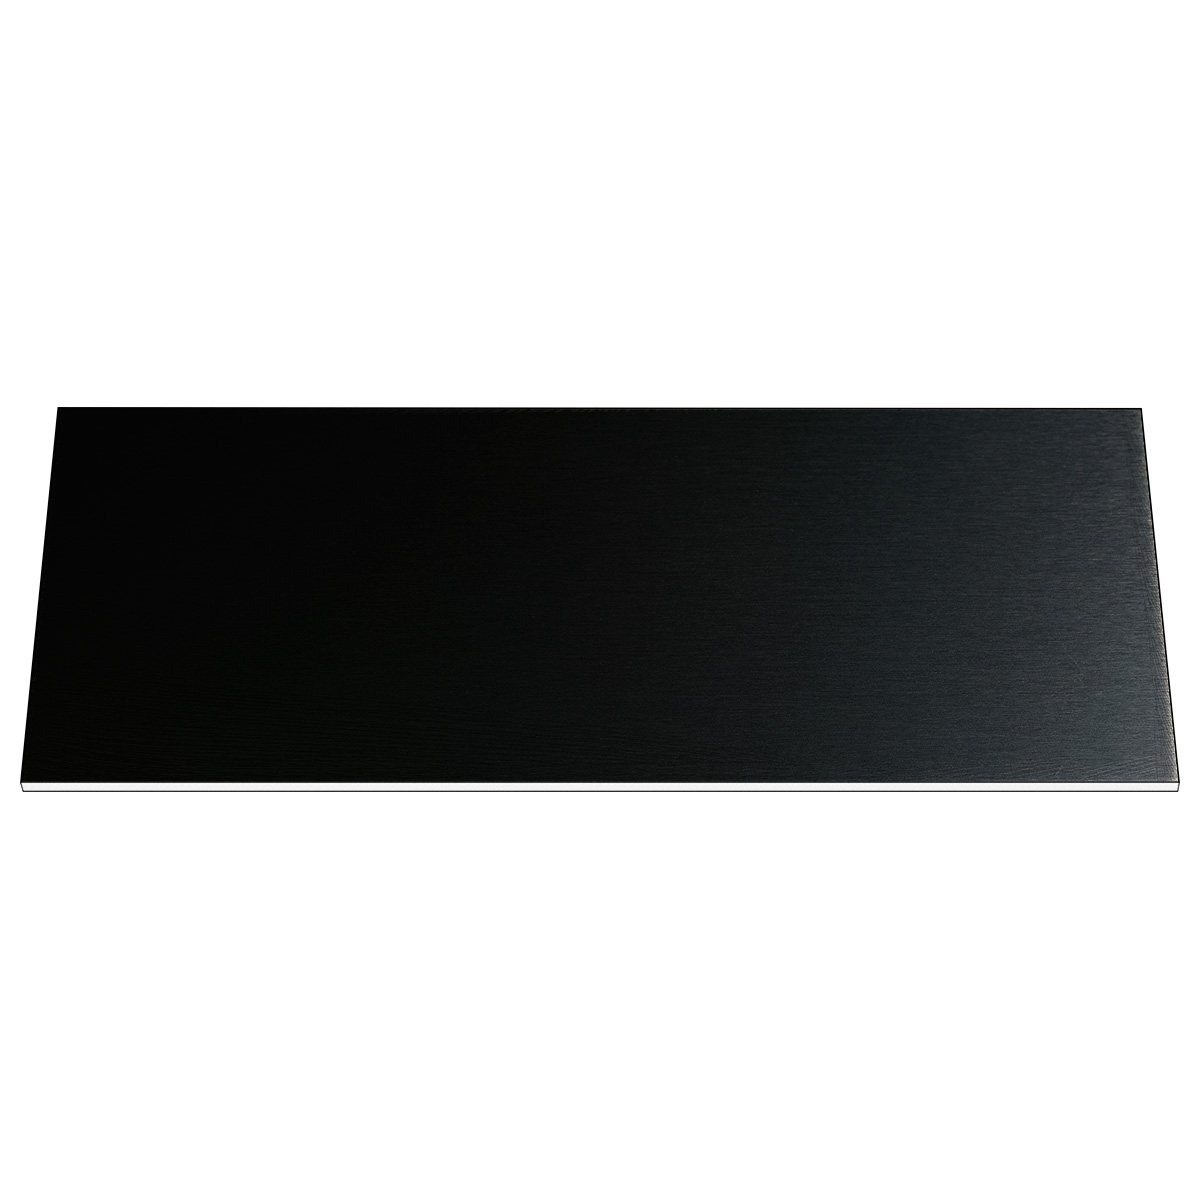 Gravurschild Resopal, schwarz, rechteckig, 100 x 40 mm, 1,5 mm dick, mit Kleber